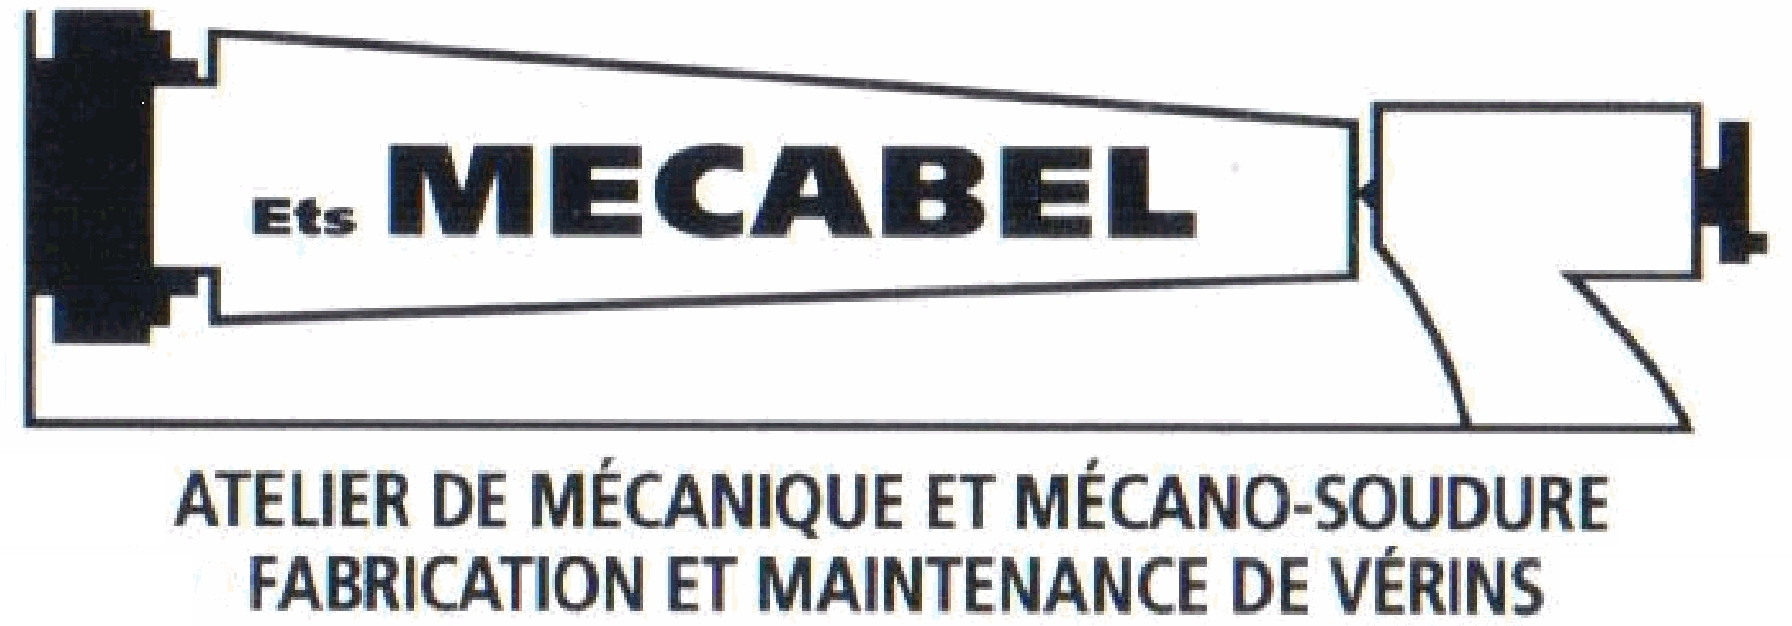 Mecabel